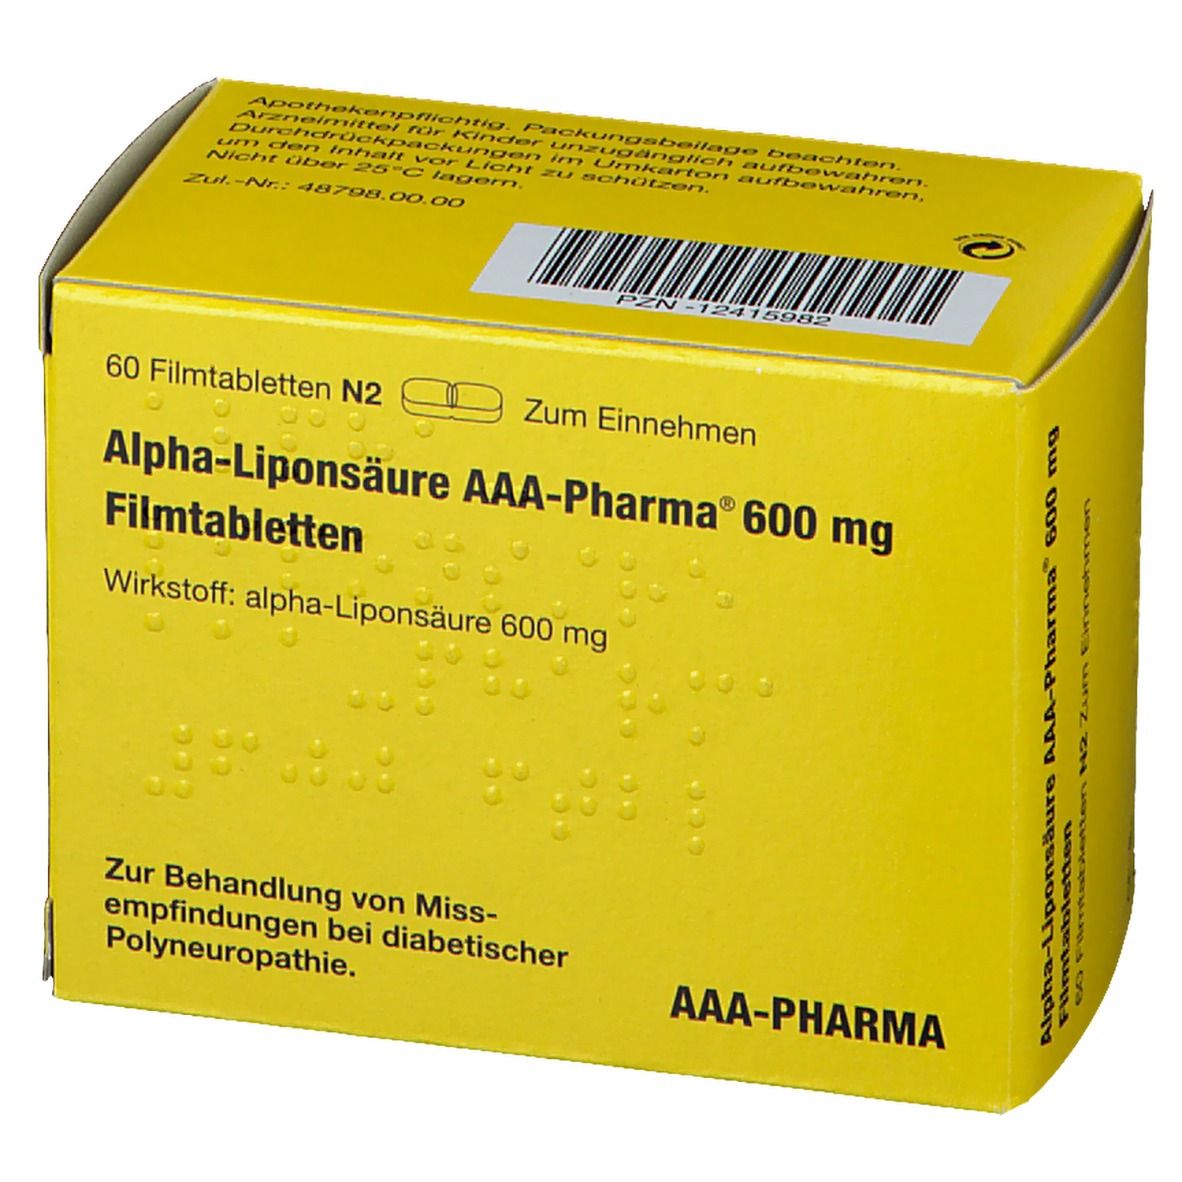 Alpha-Liponsäure AAA-Pharma® 600 mg